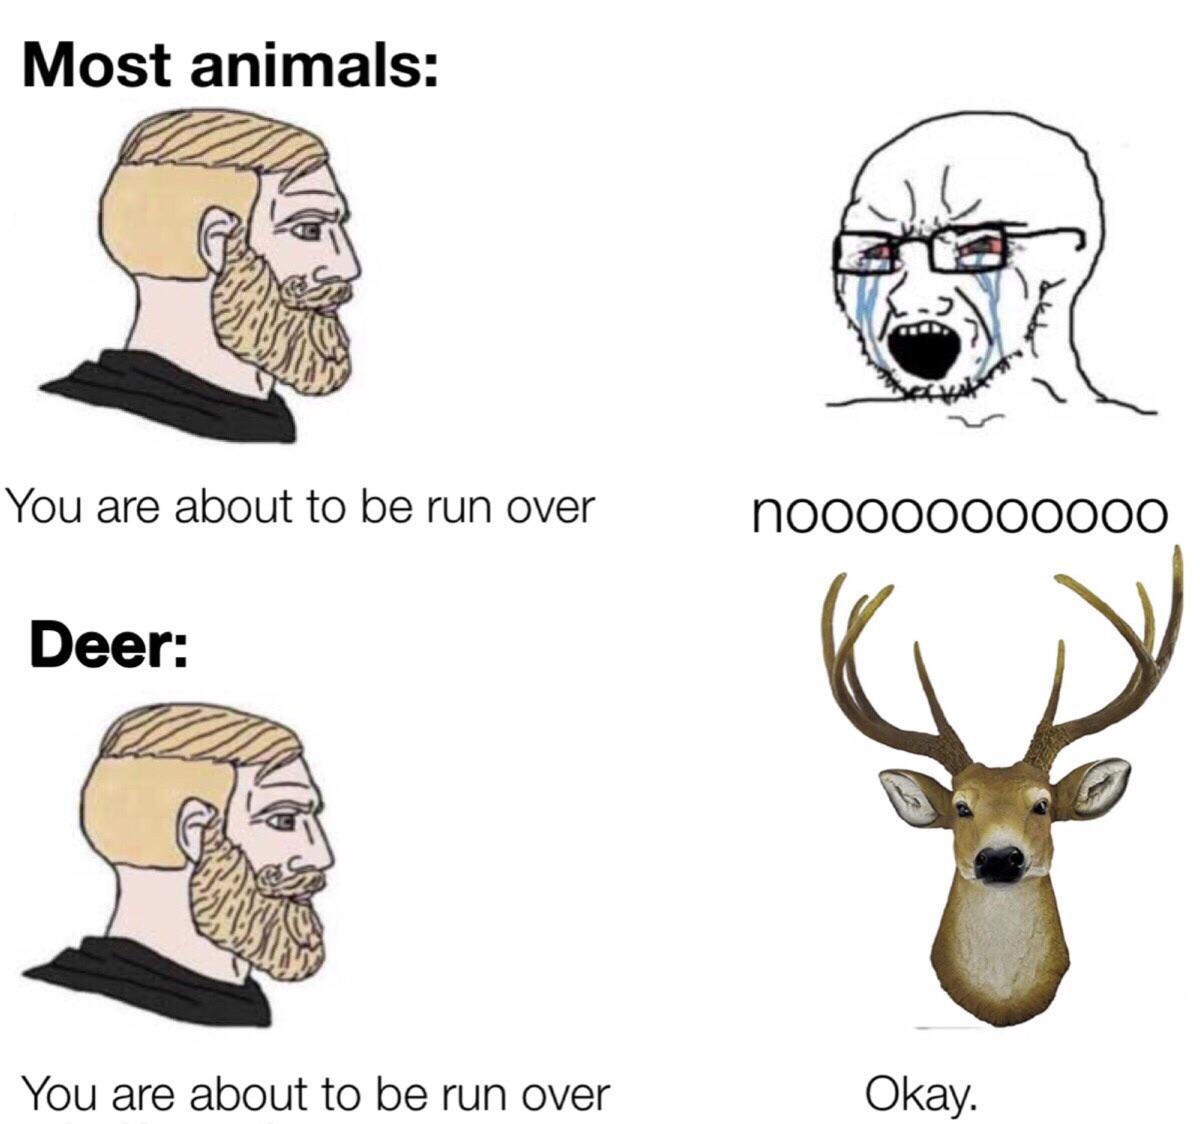 Dank, Salman Khan, Happy, Deer Dank Memes Dank, Salman Khan, Happy, Deer text: Most animals: You are about to be run over Deer: You are about to be run over nooooooooooo Okay. 